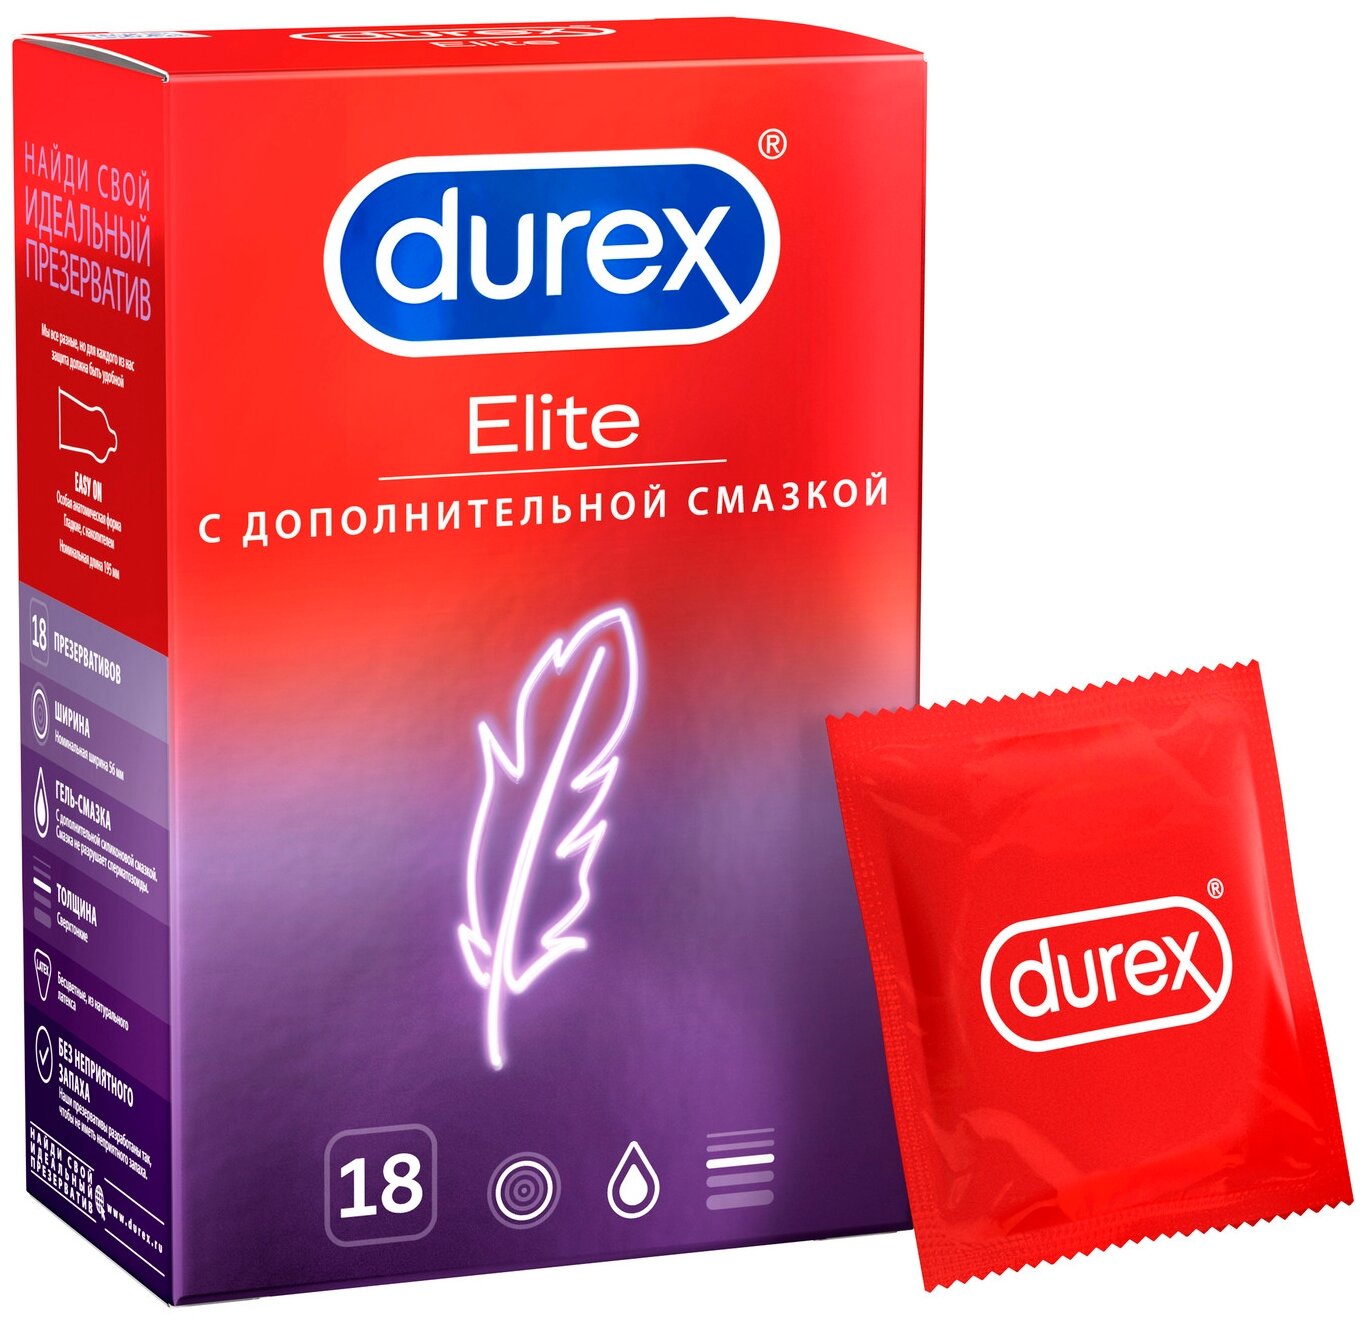 Презервативы Durex Elite, 18 шт.